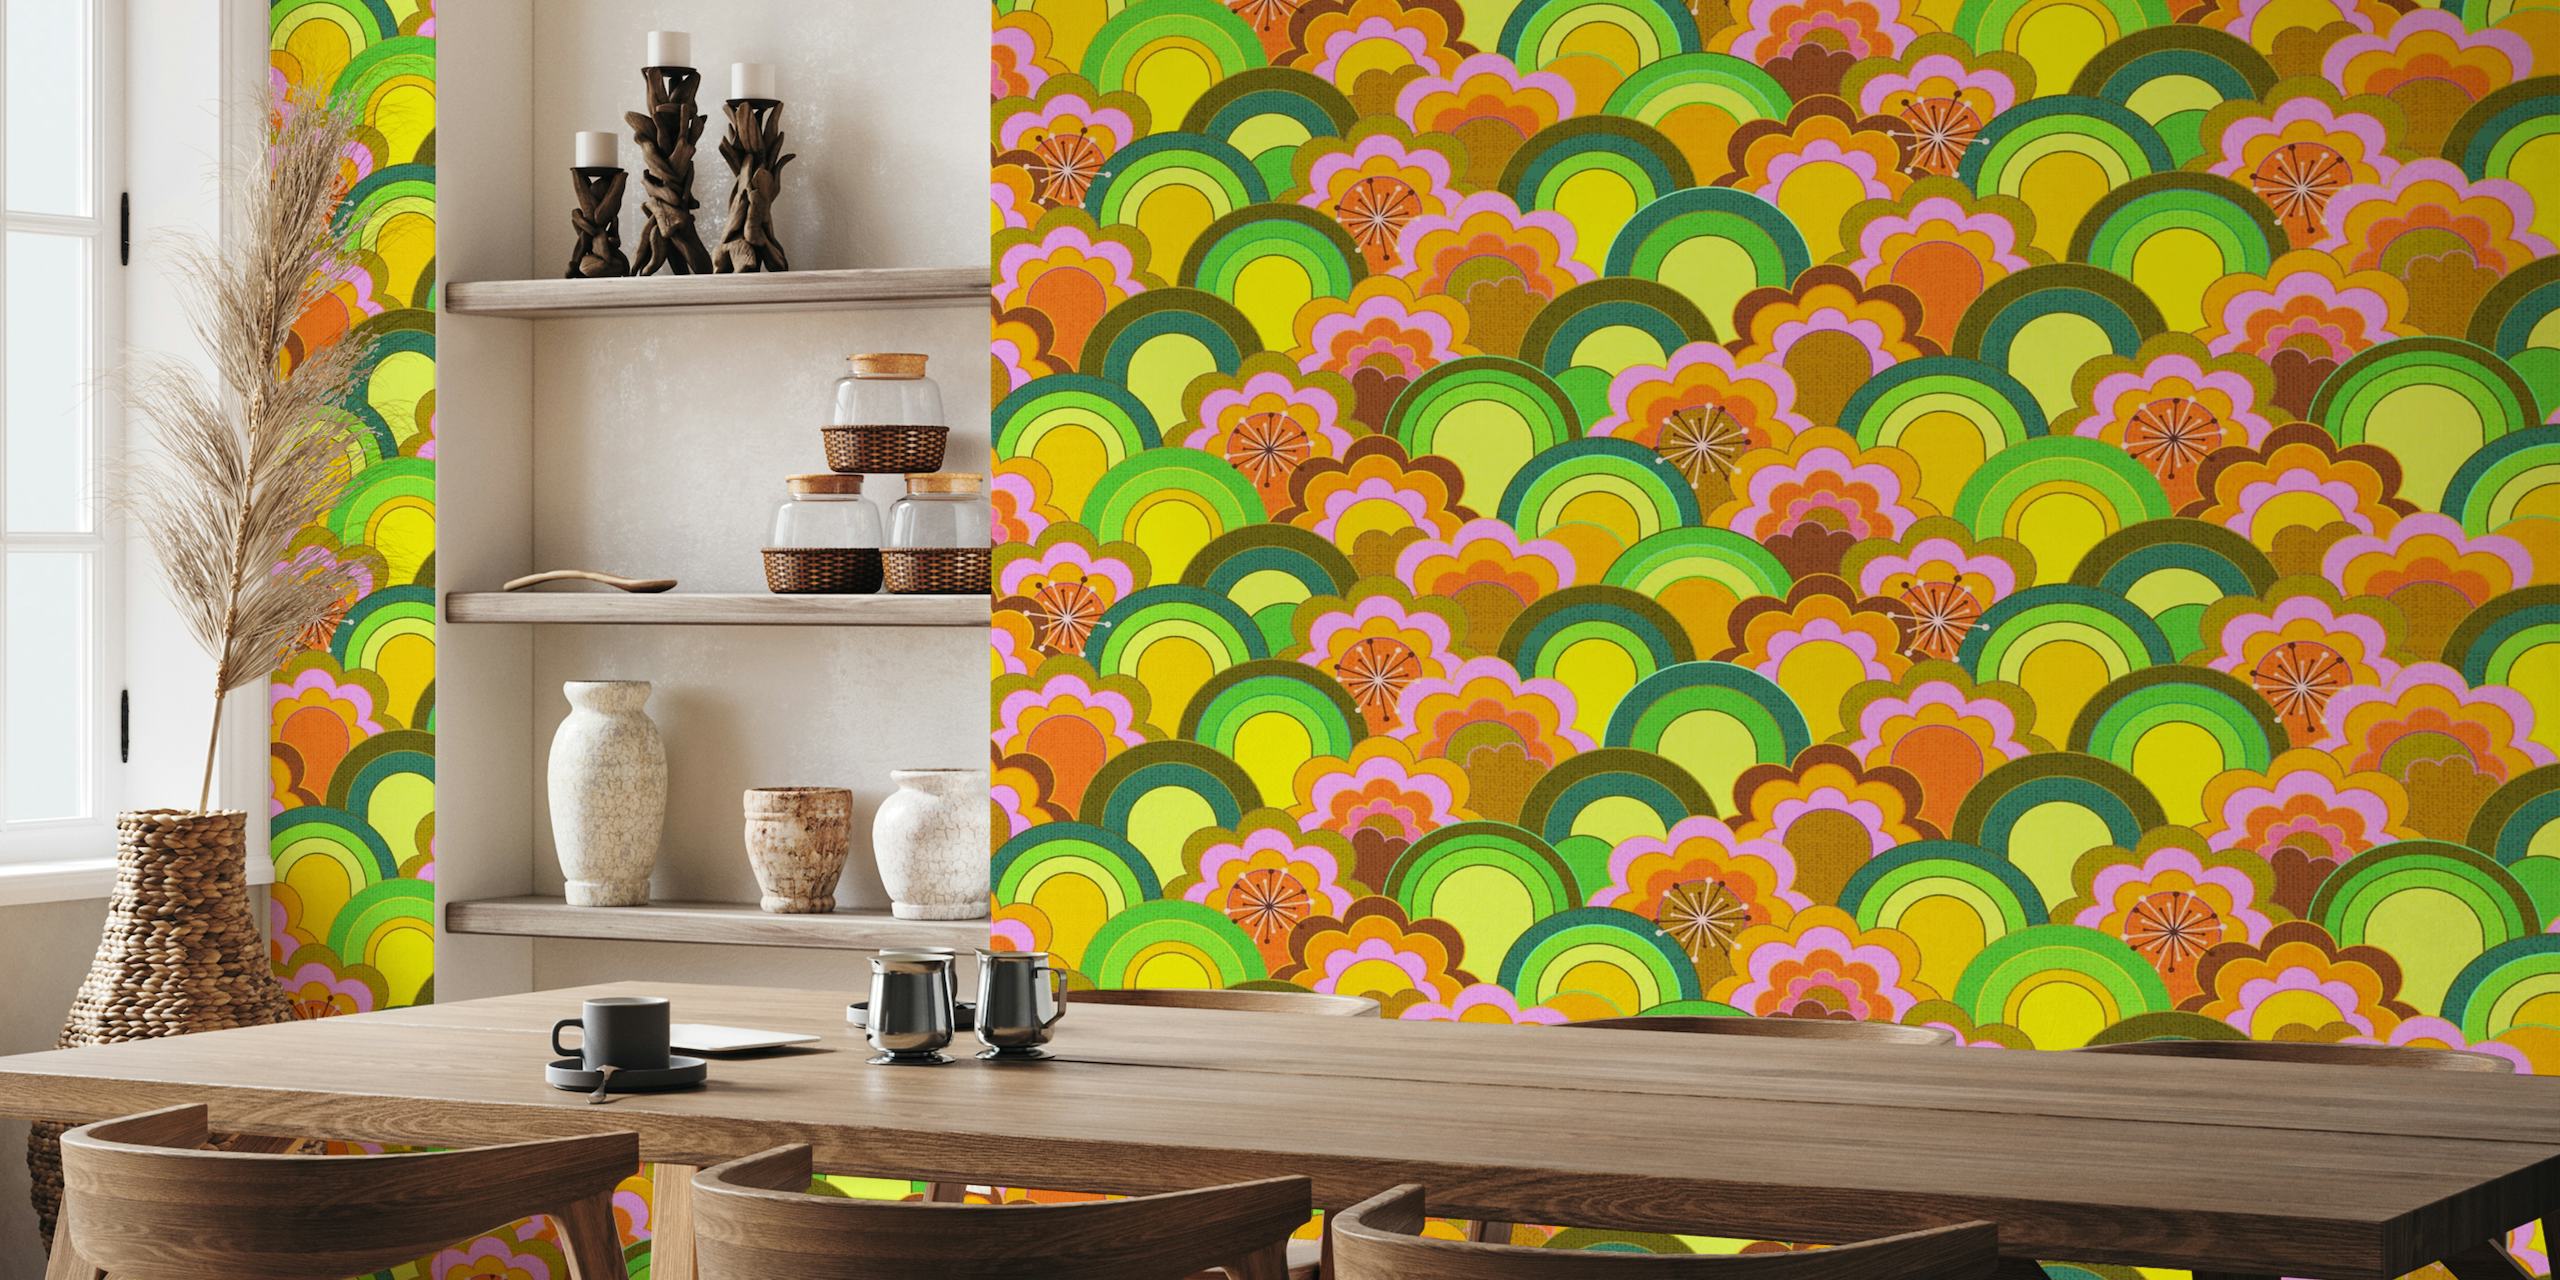 Papier peint coloré de fleurs arc-en-ciel inspiré des années 70 avec un aspect texturé